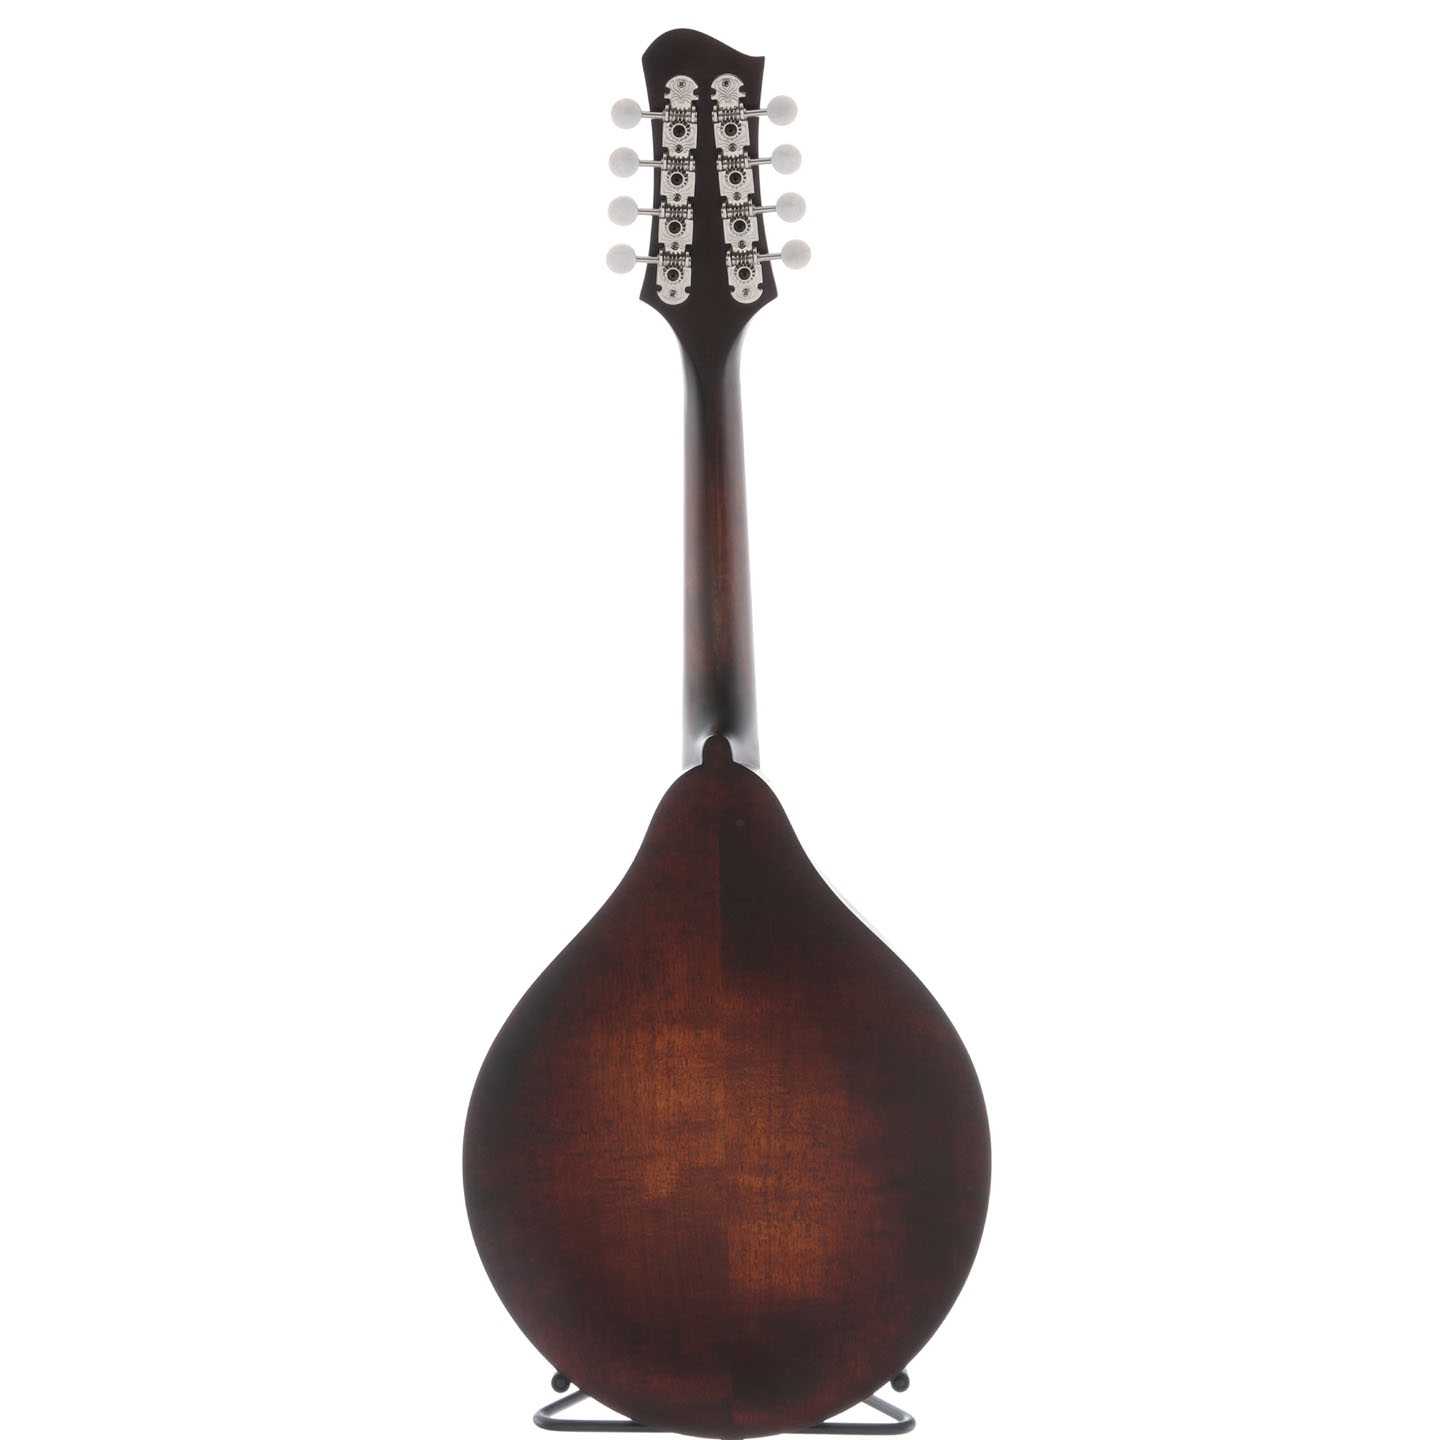 Eastman MD305 Classic Mandolin & Gigbag – Elderly Instruments